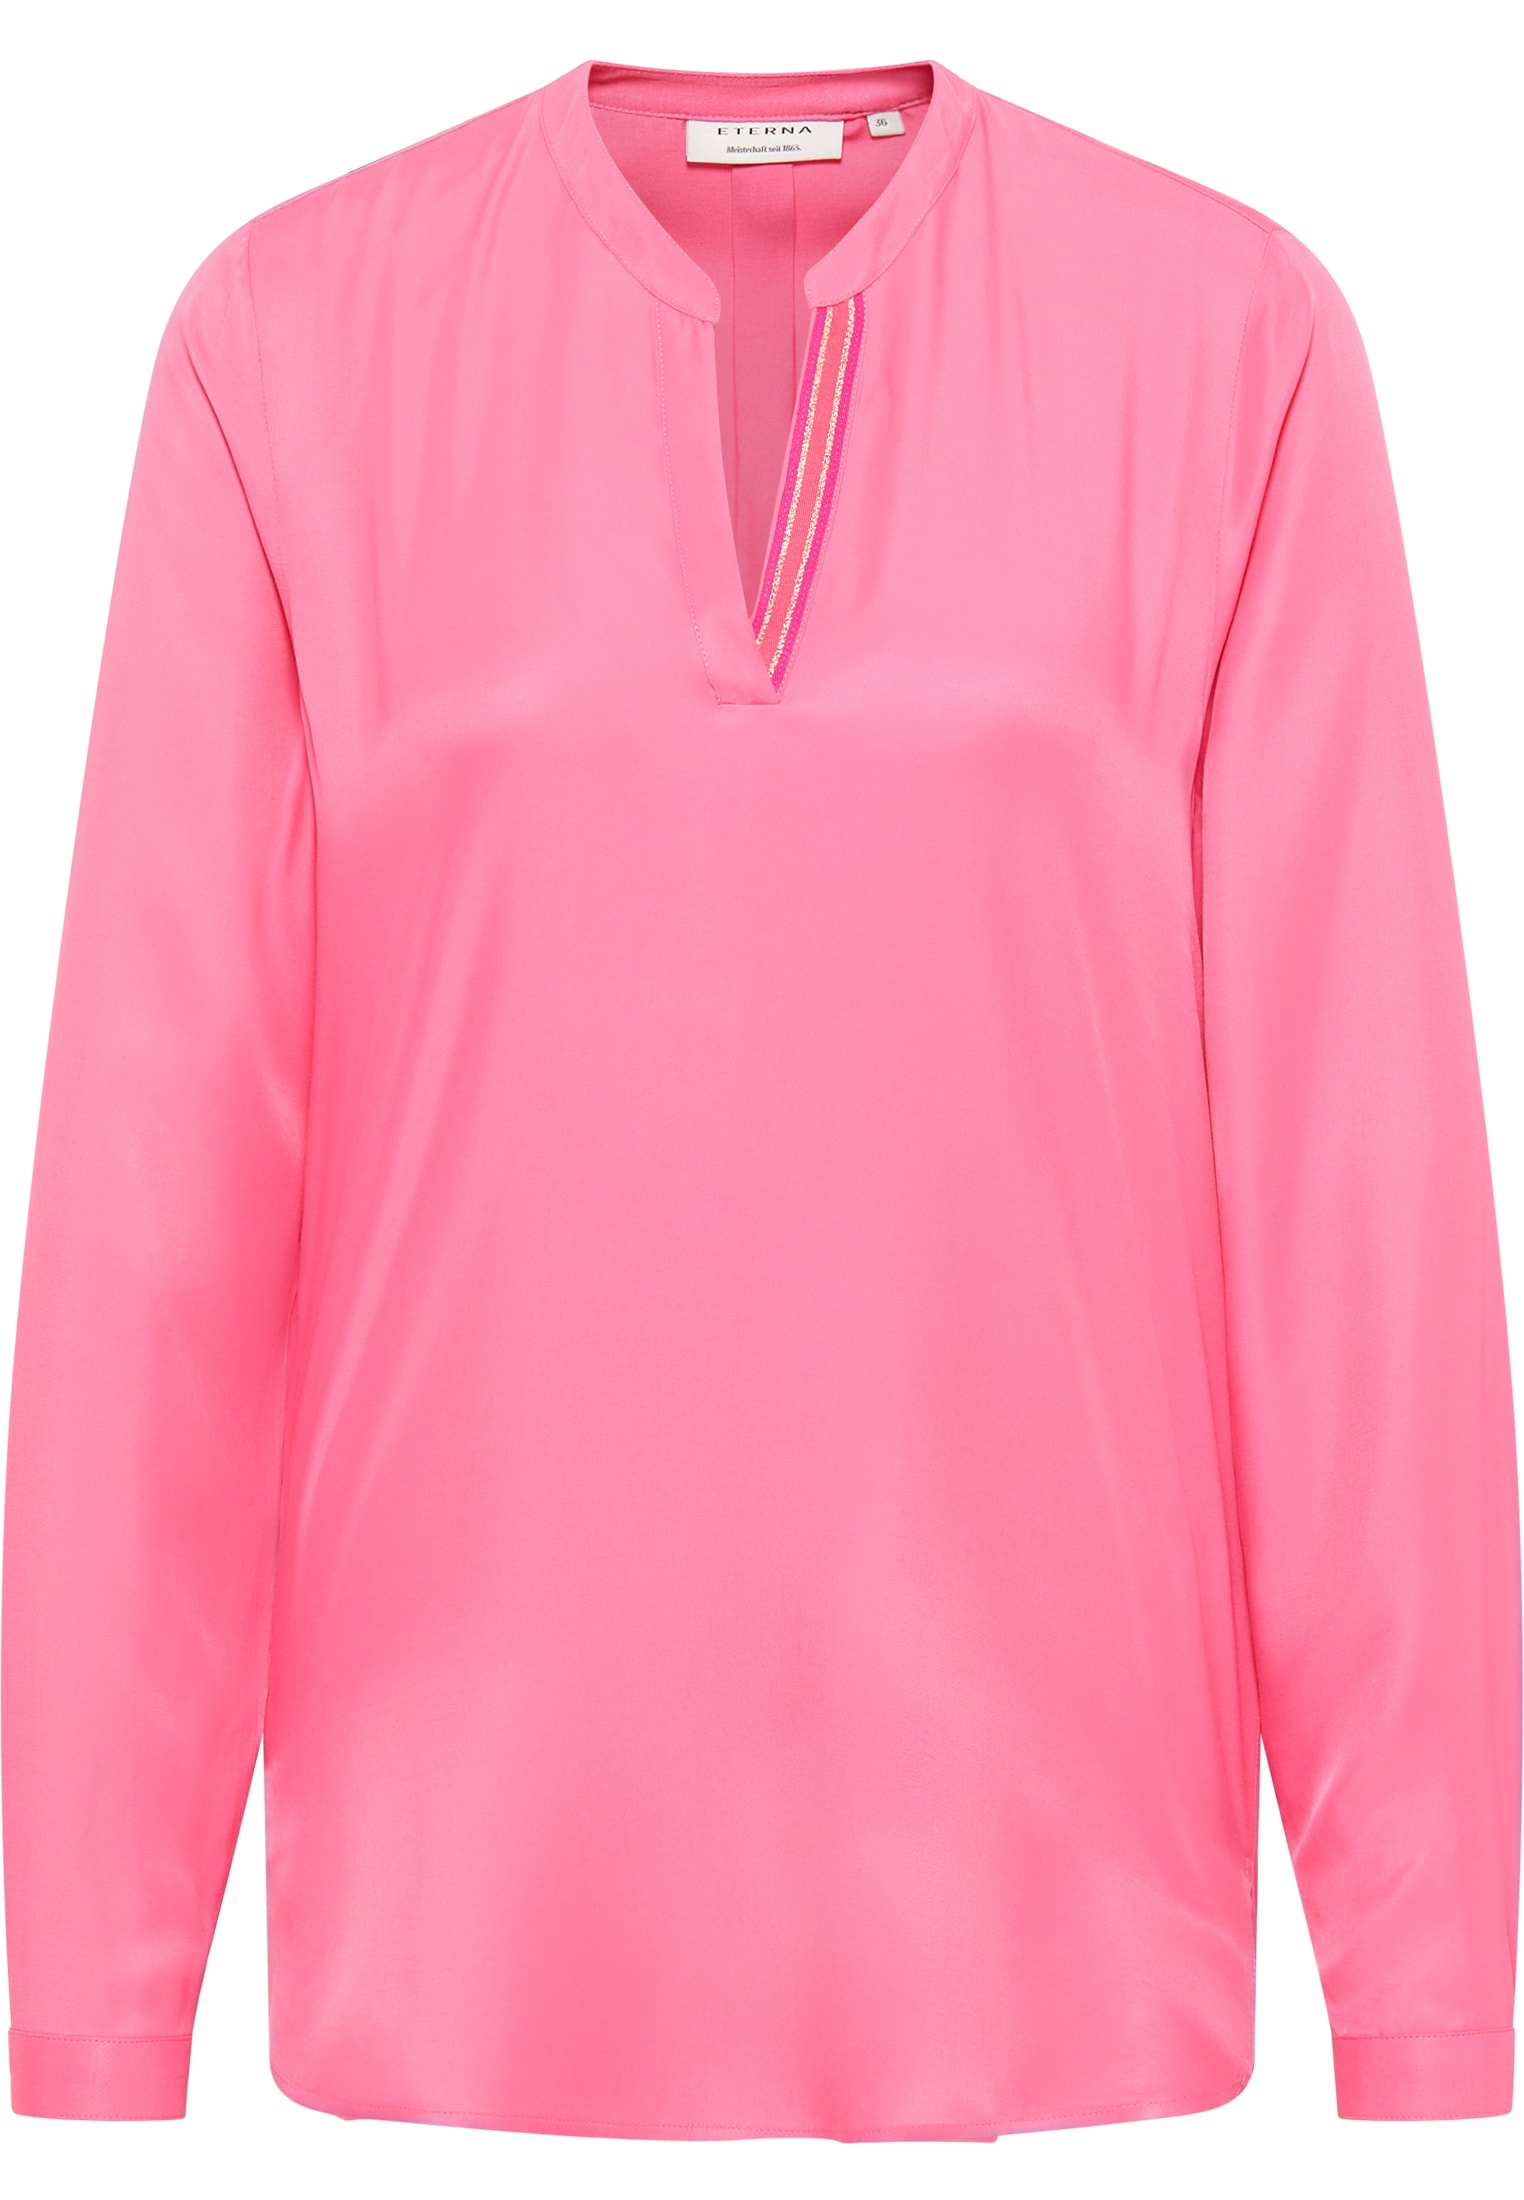 Viscose Shirt Bluse in pink Langarm | | unifarben 36 | pink | 2BL04272-15-21-36-1/1